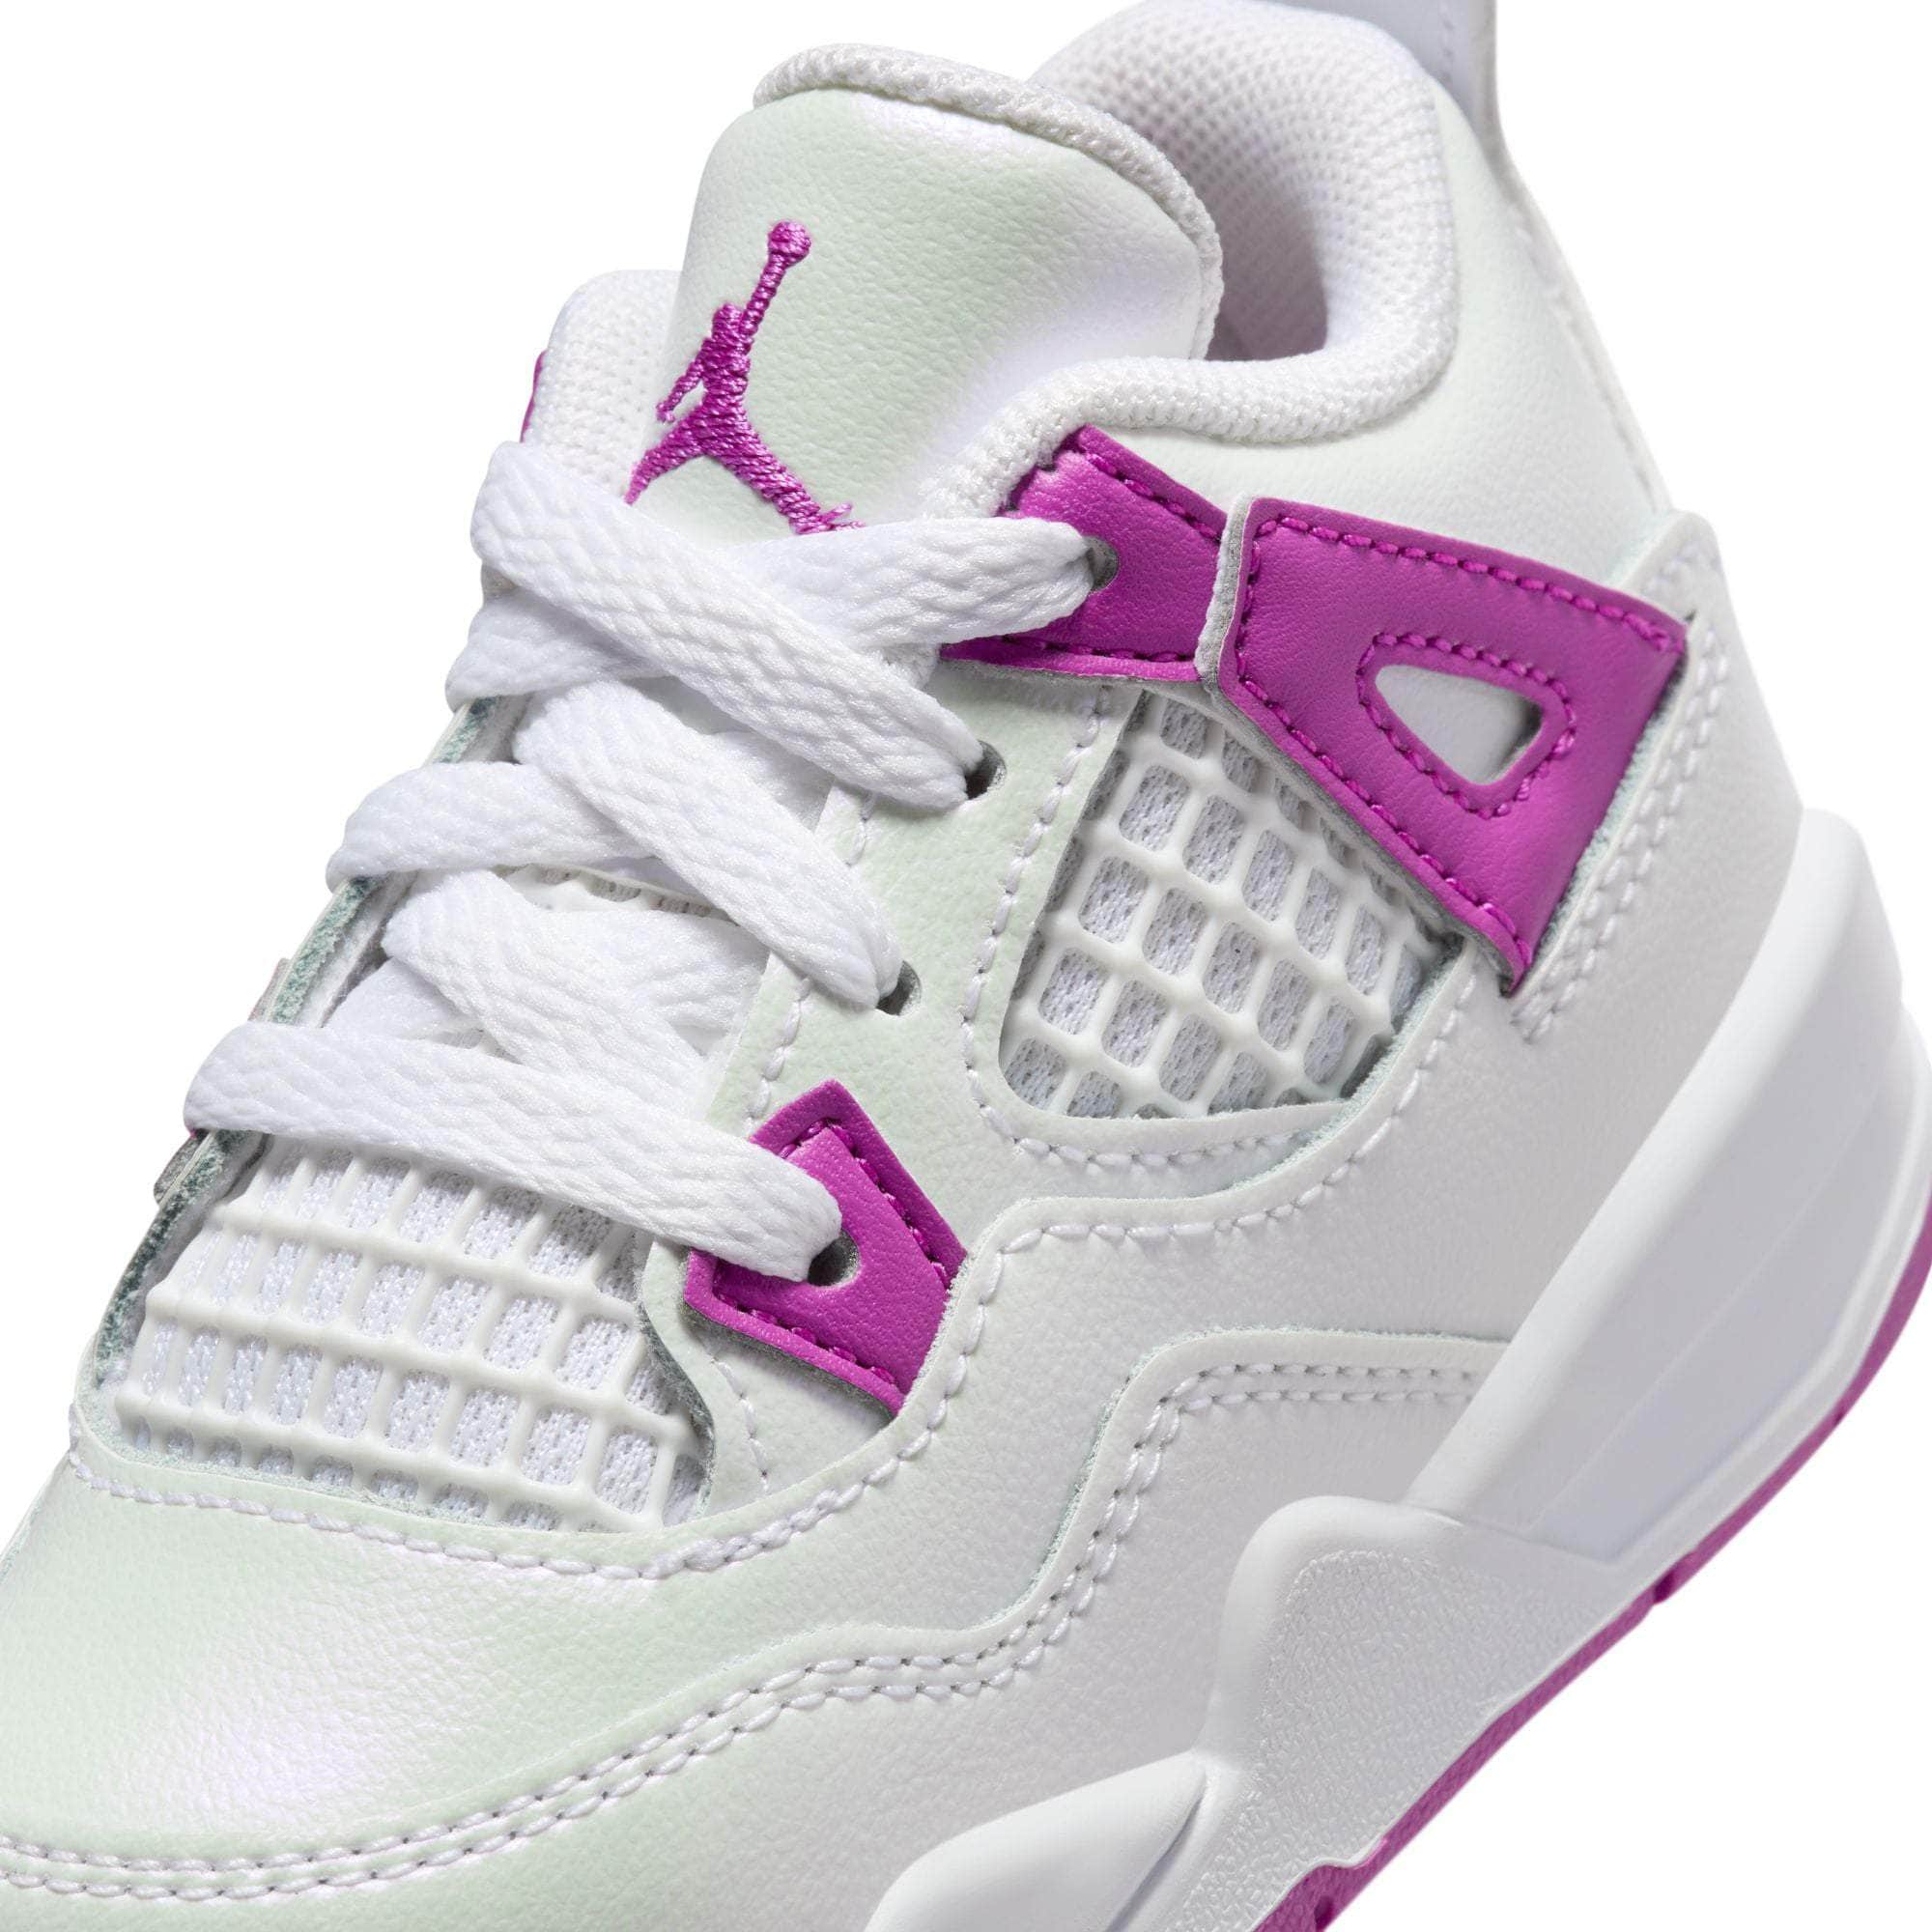 Air Jordan Footwear Air Jordan 4 "Hyper Violet" - Toddler's TD